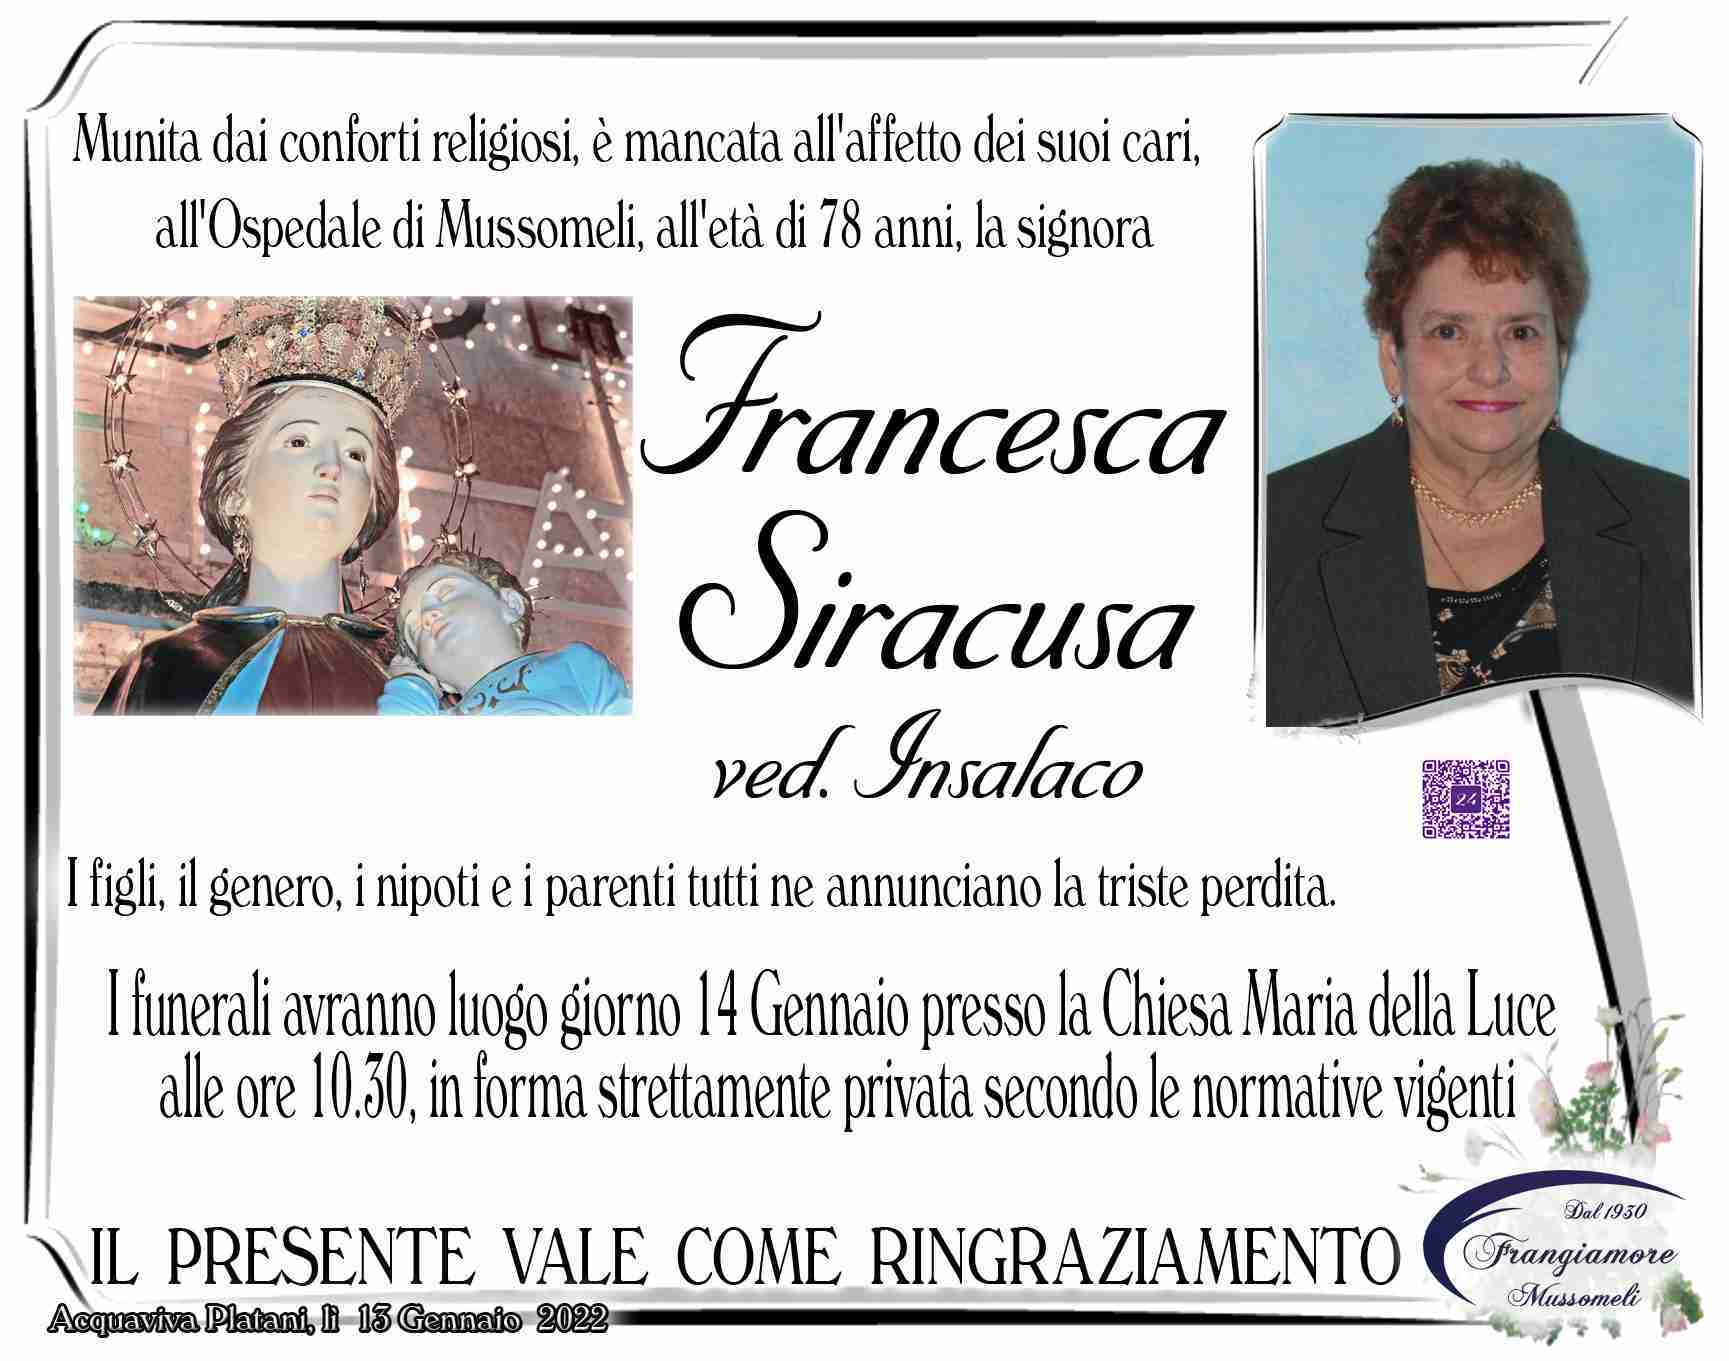 Francesca Siracusa